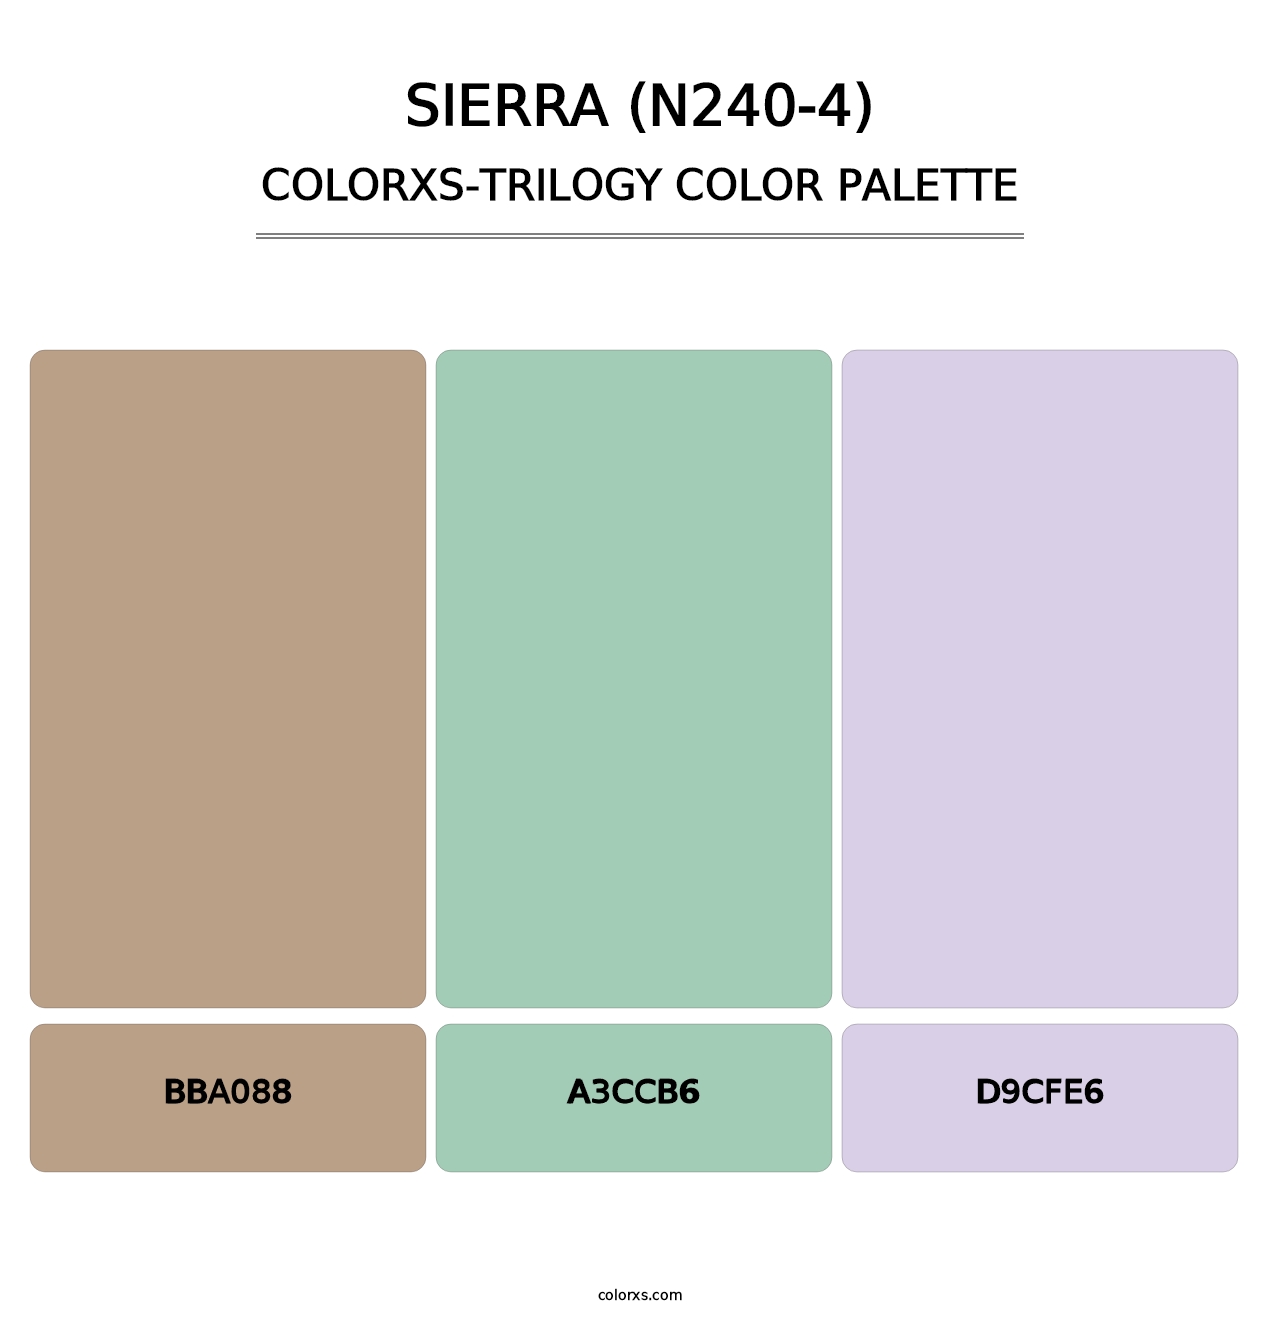 Sierra (N240-4) - Colorxs Trilogy Palette